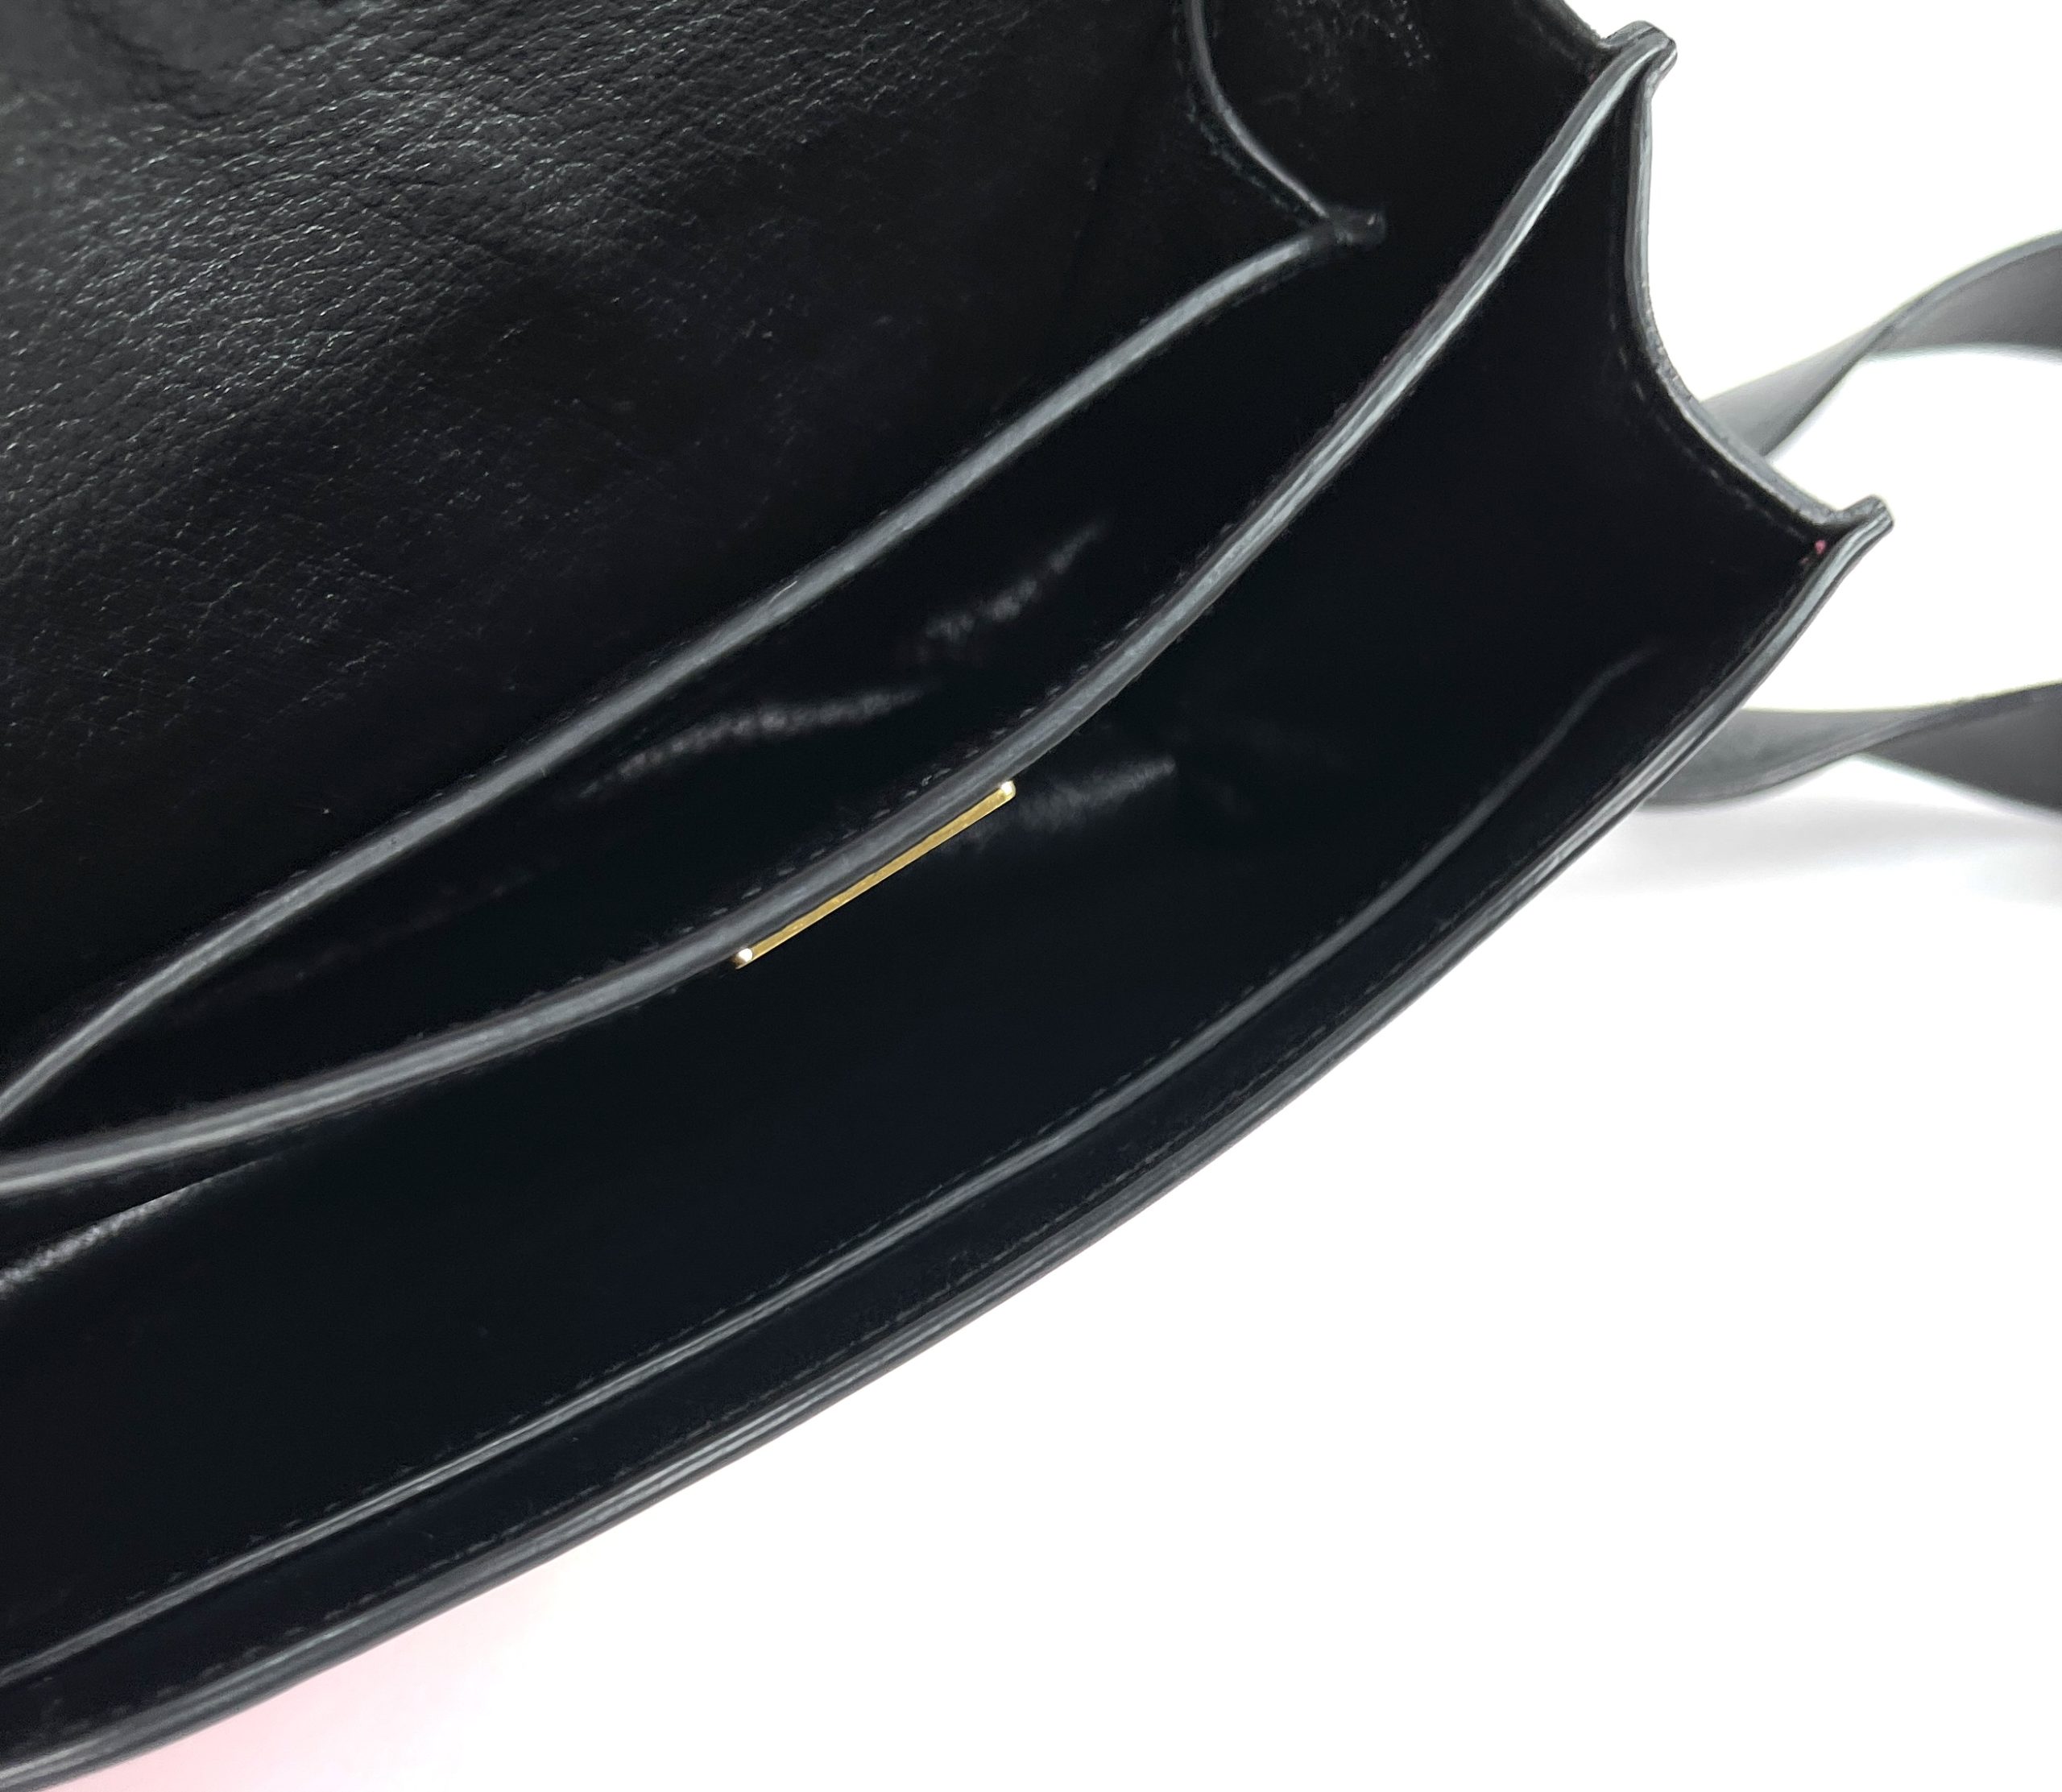 Prada City Calf Saffiano Cahier Bag Geranio Black Shoulder Bag - A World Of  Goods For You, LLC